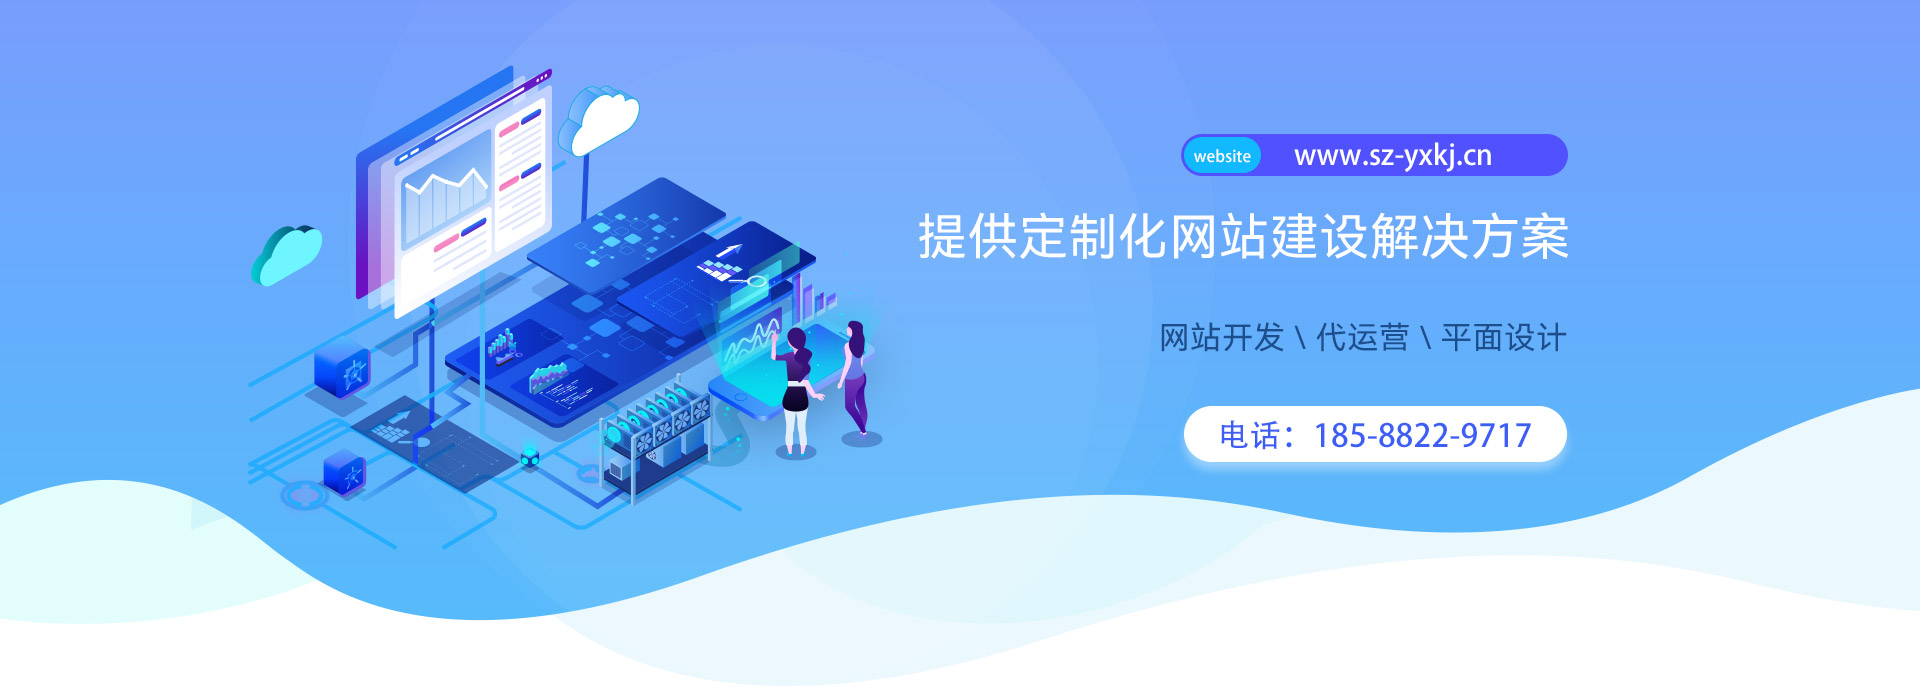 深圳网站开发工作室